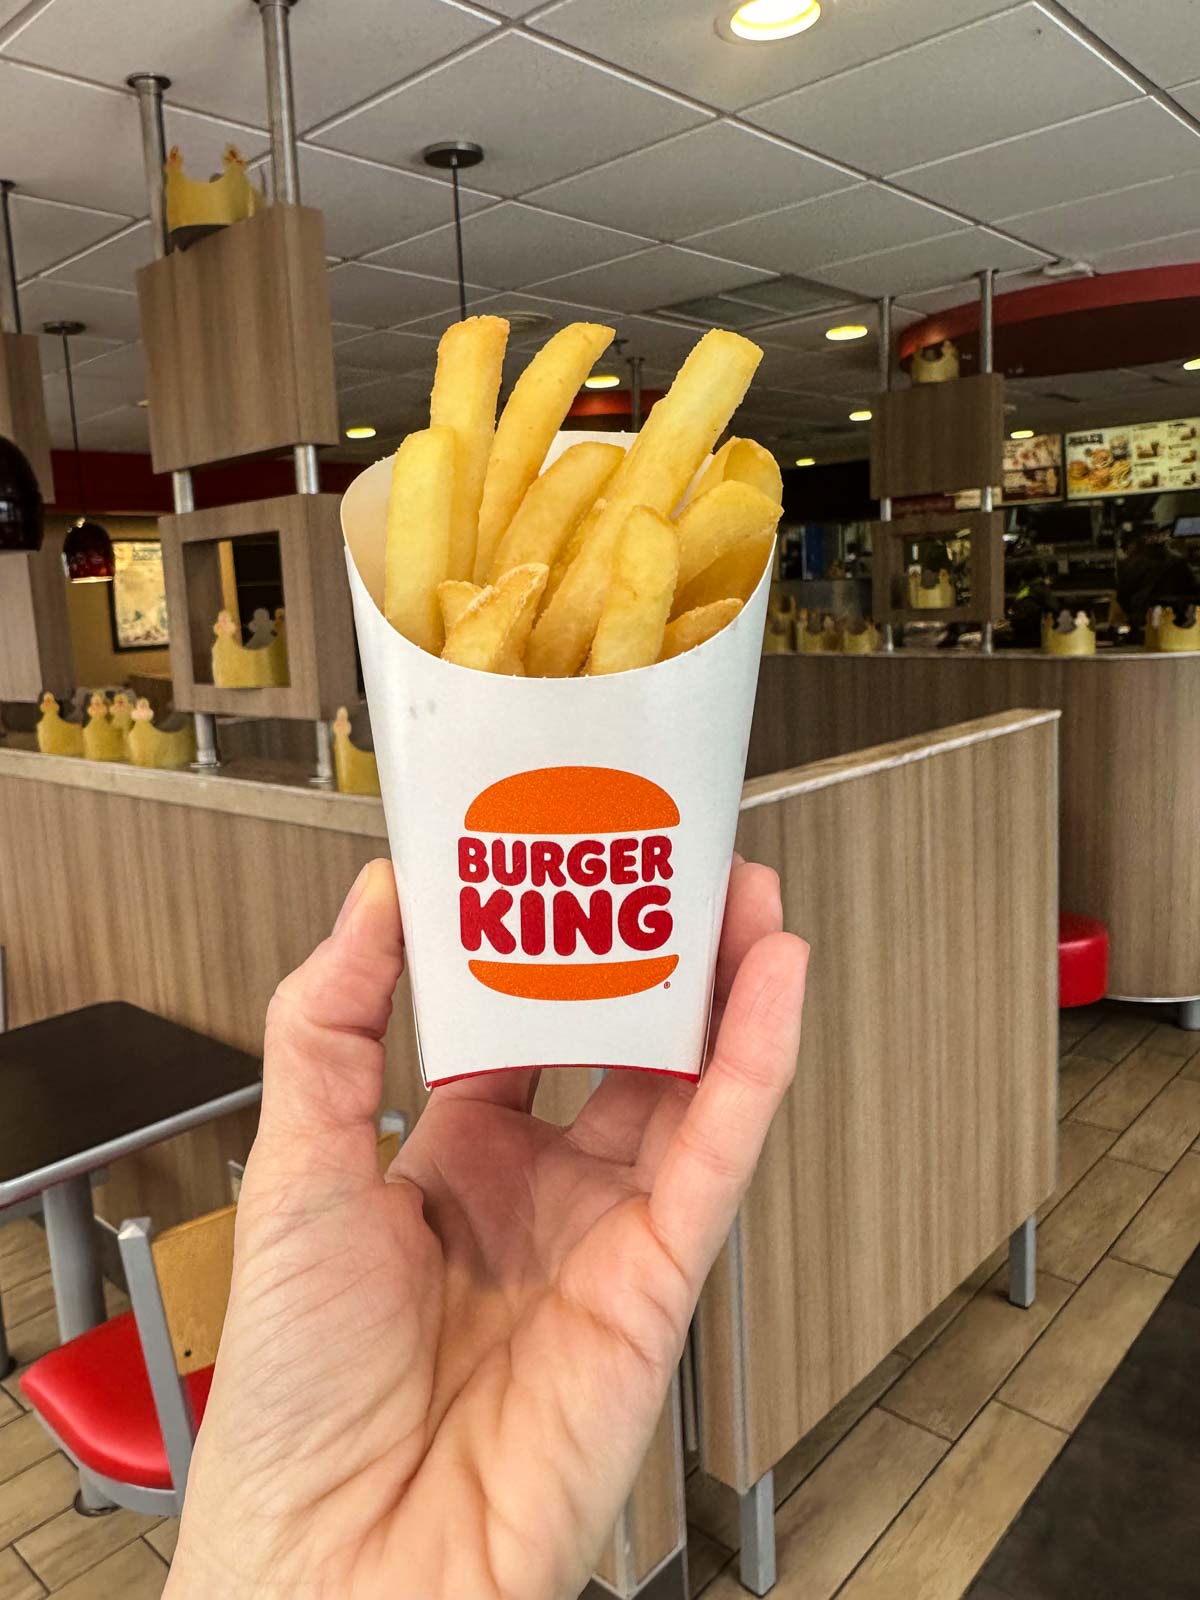 French fries at Burger King.